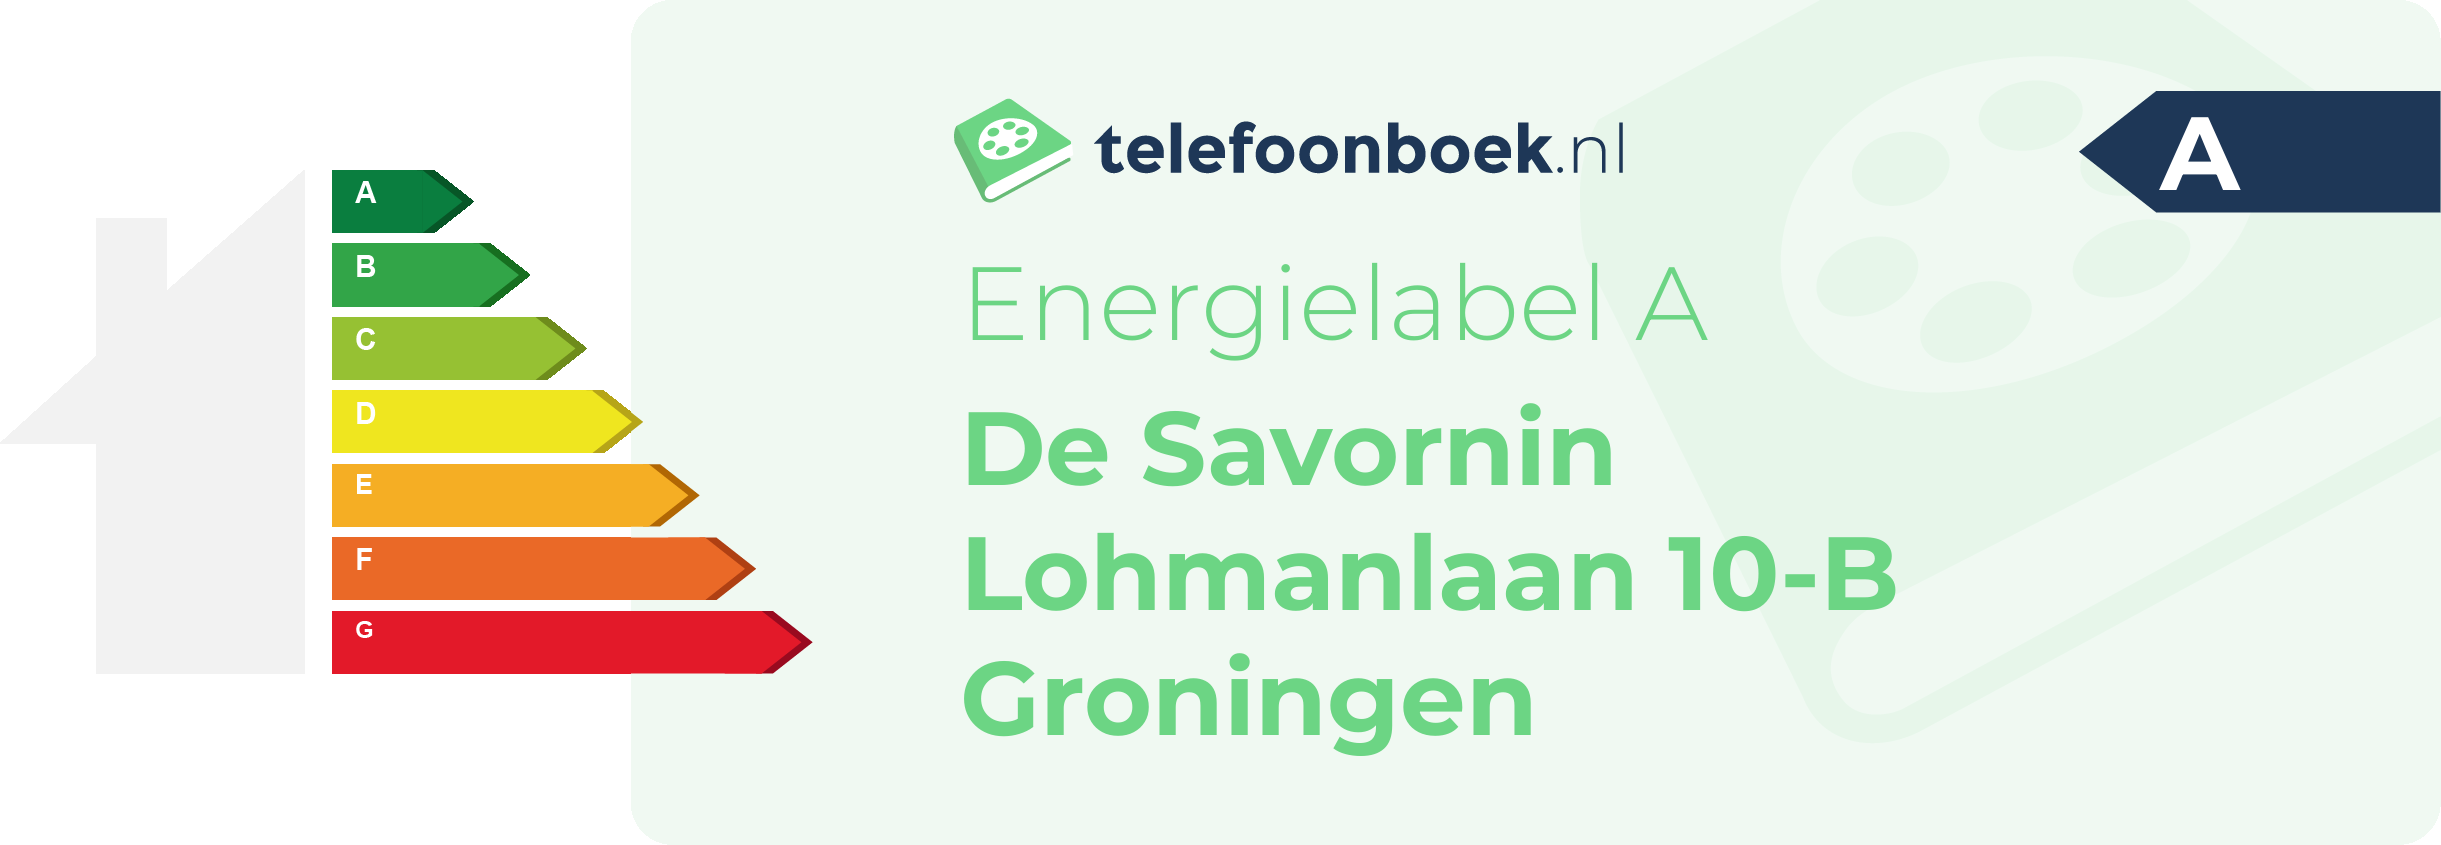 Energielabel De Savornin Lohmanlaan 10-B Groningen